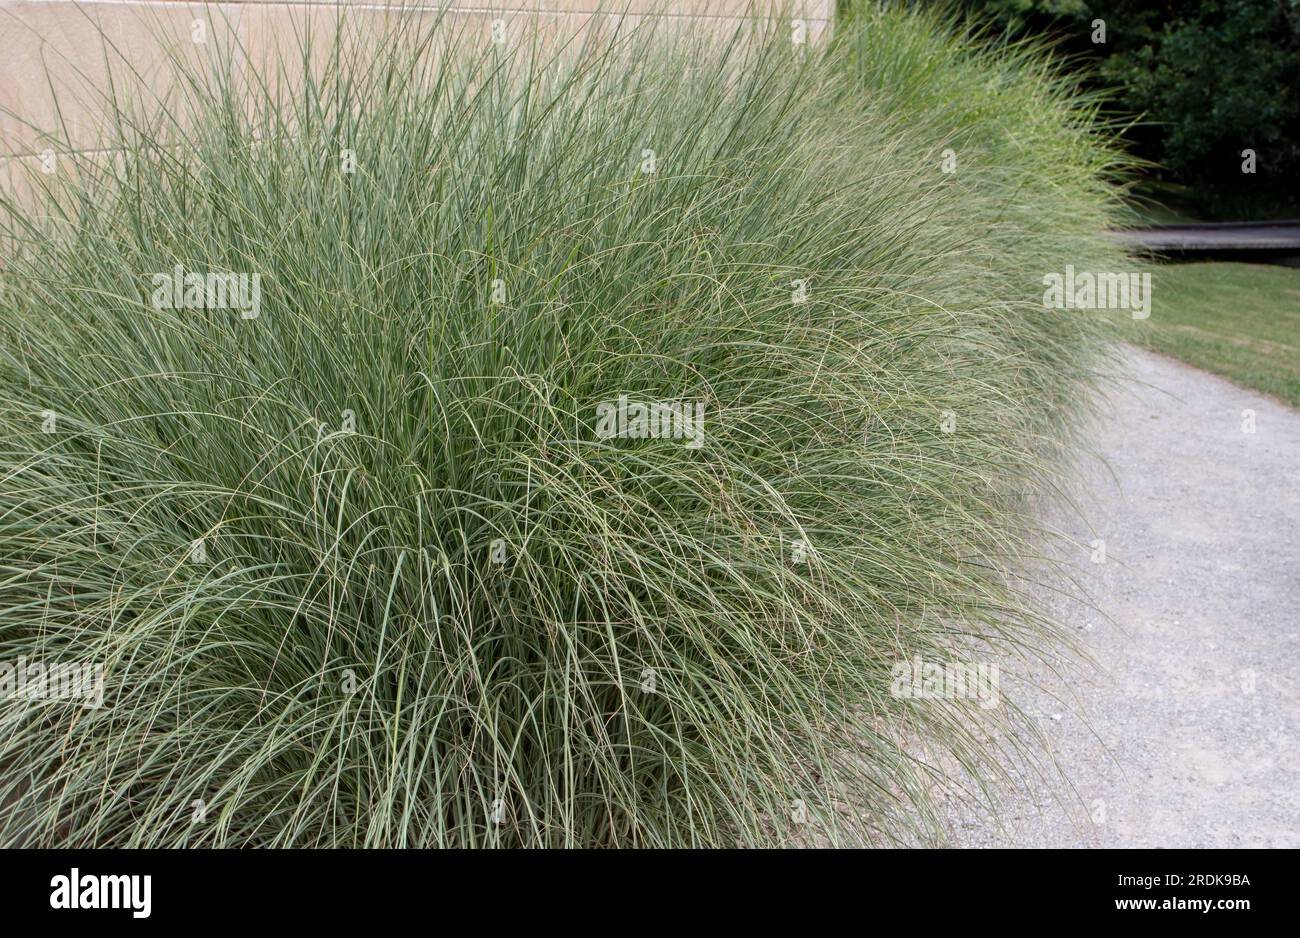 Bordure d'herbe ornementale Miscanthus sinensis. Plantes d'herbe argentée chinoise feuillage arqué fin vert argenté. Banque D'Images